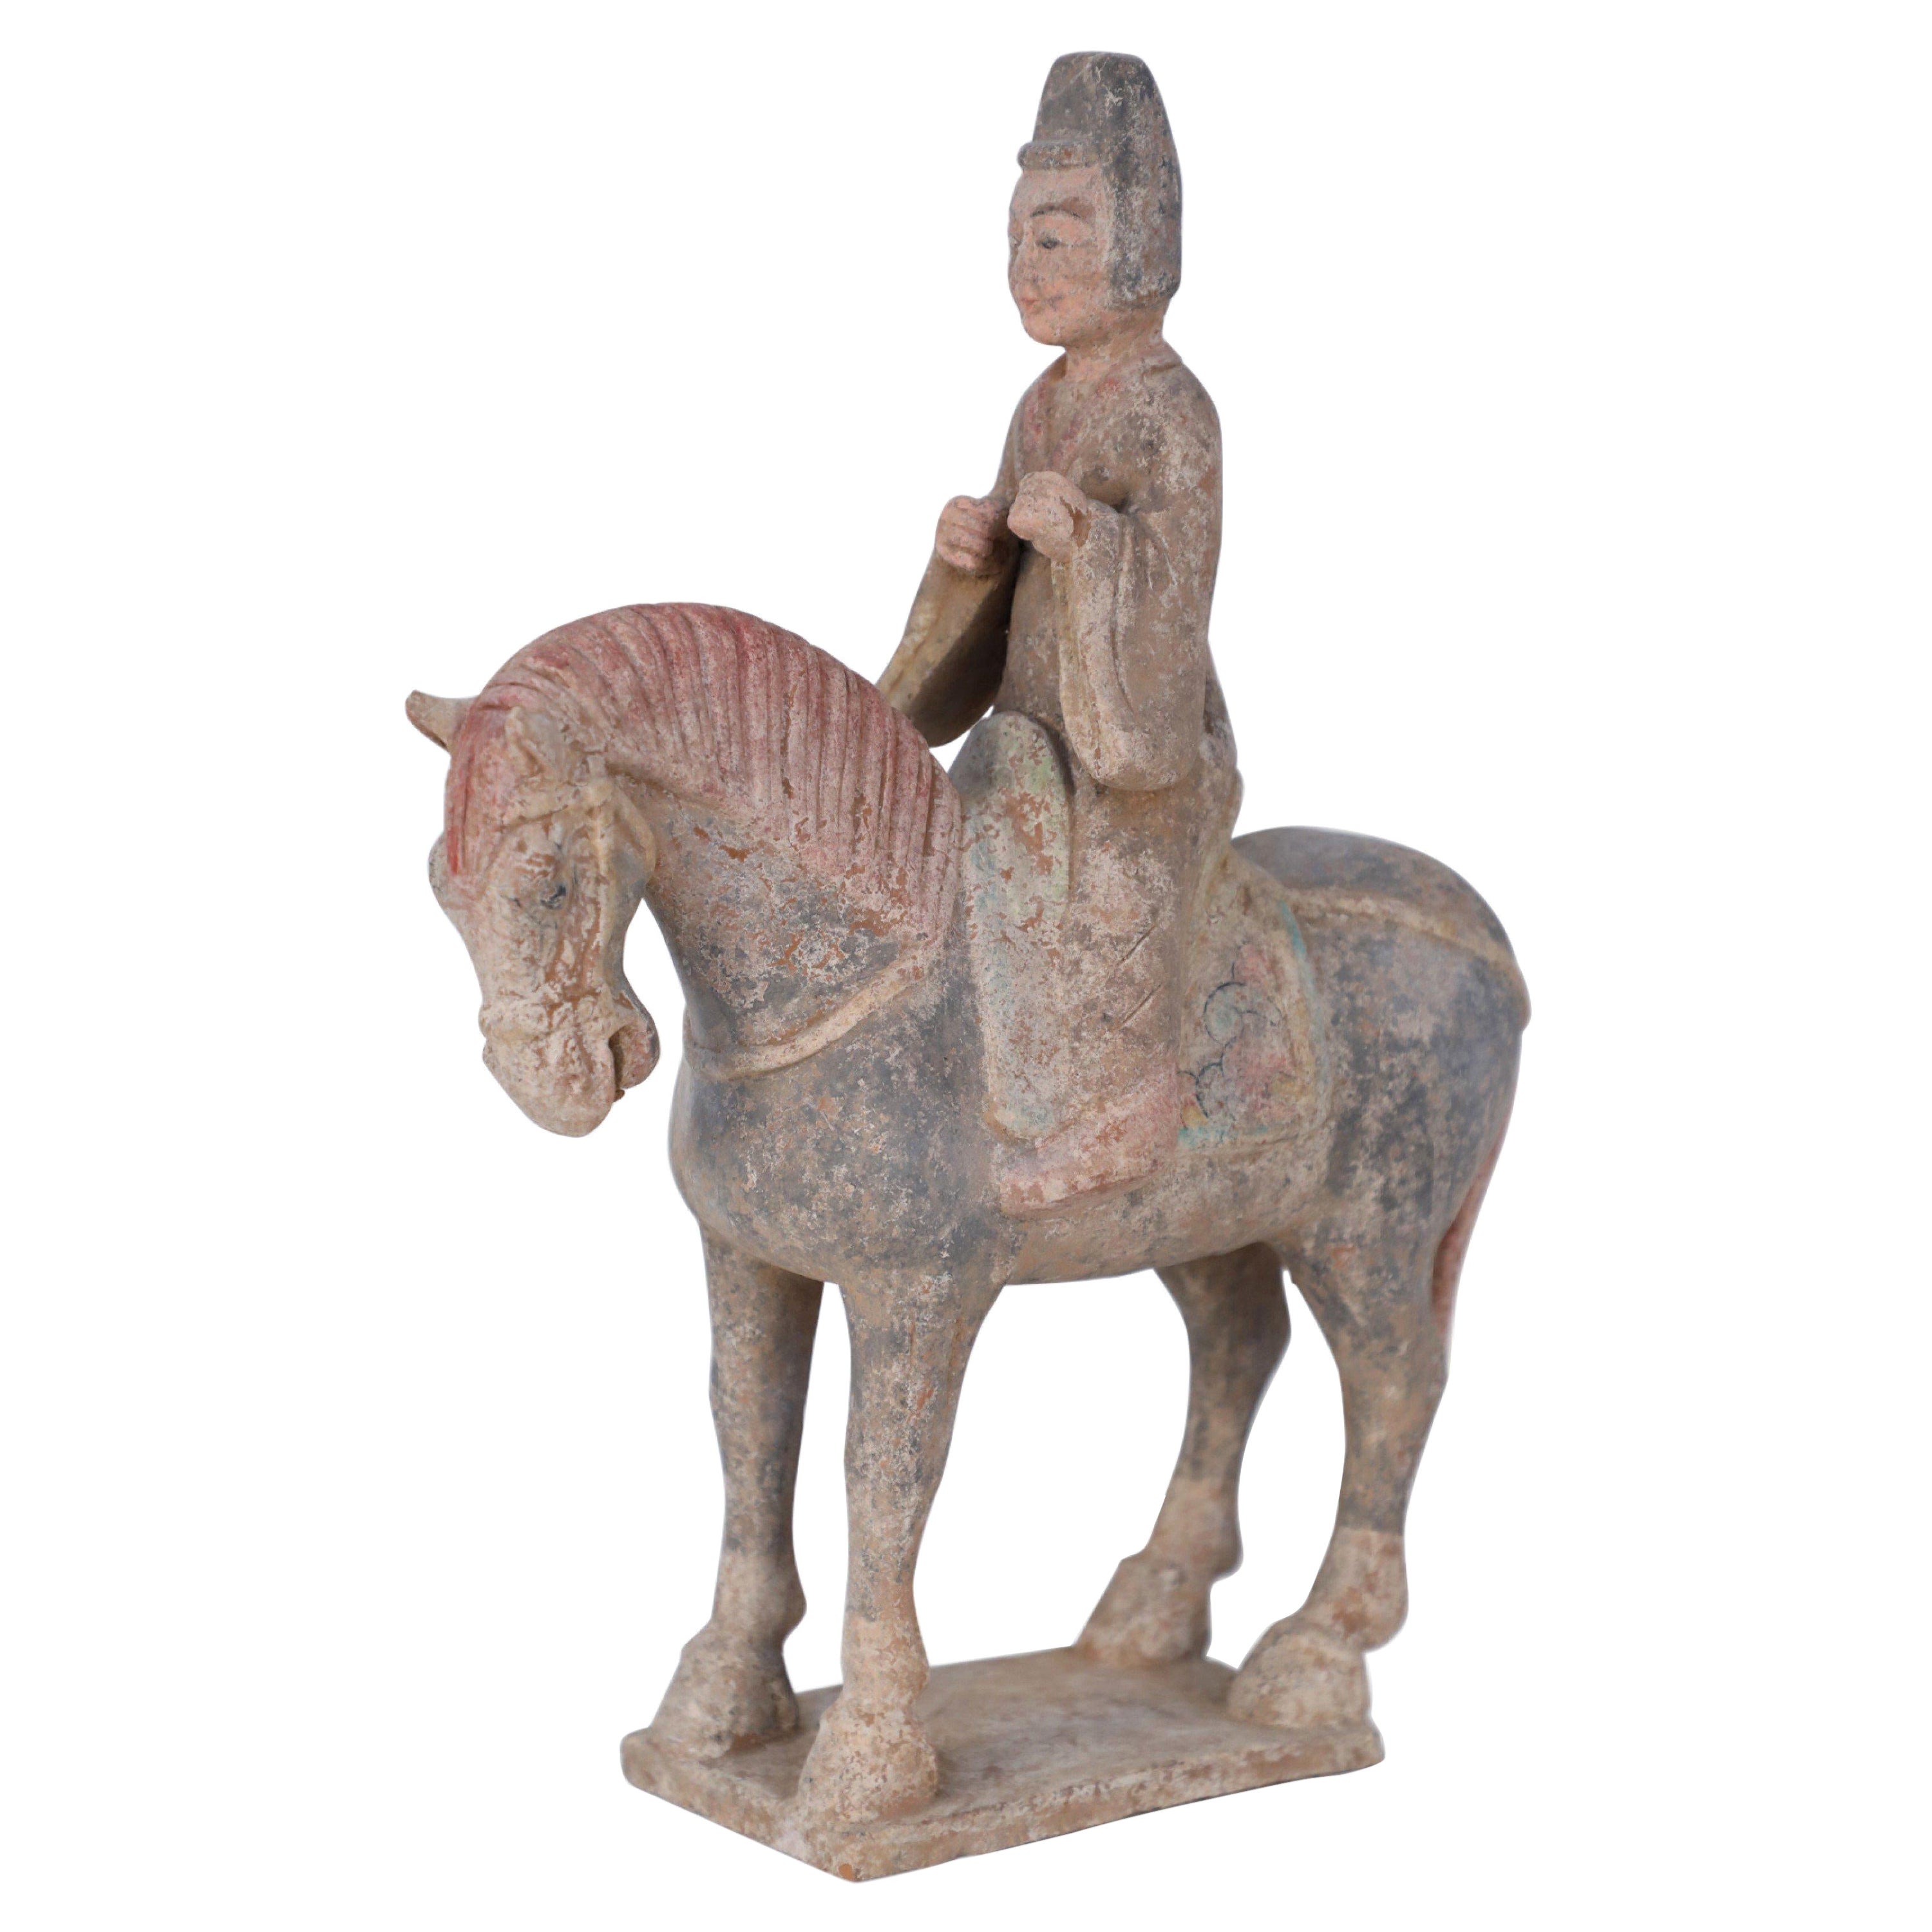 Chinesische Grabfigur aus Terrakotta im Stil der Tang Dynasty mit Pferd und Reiter